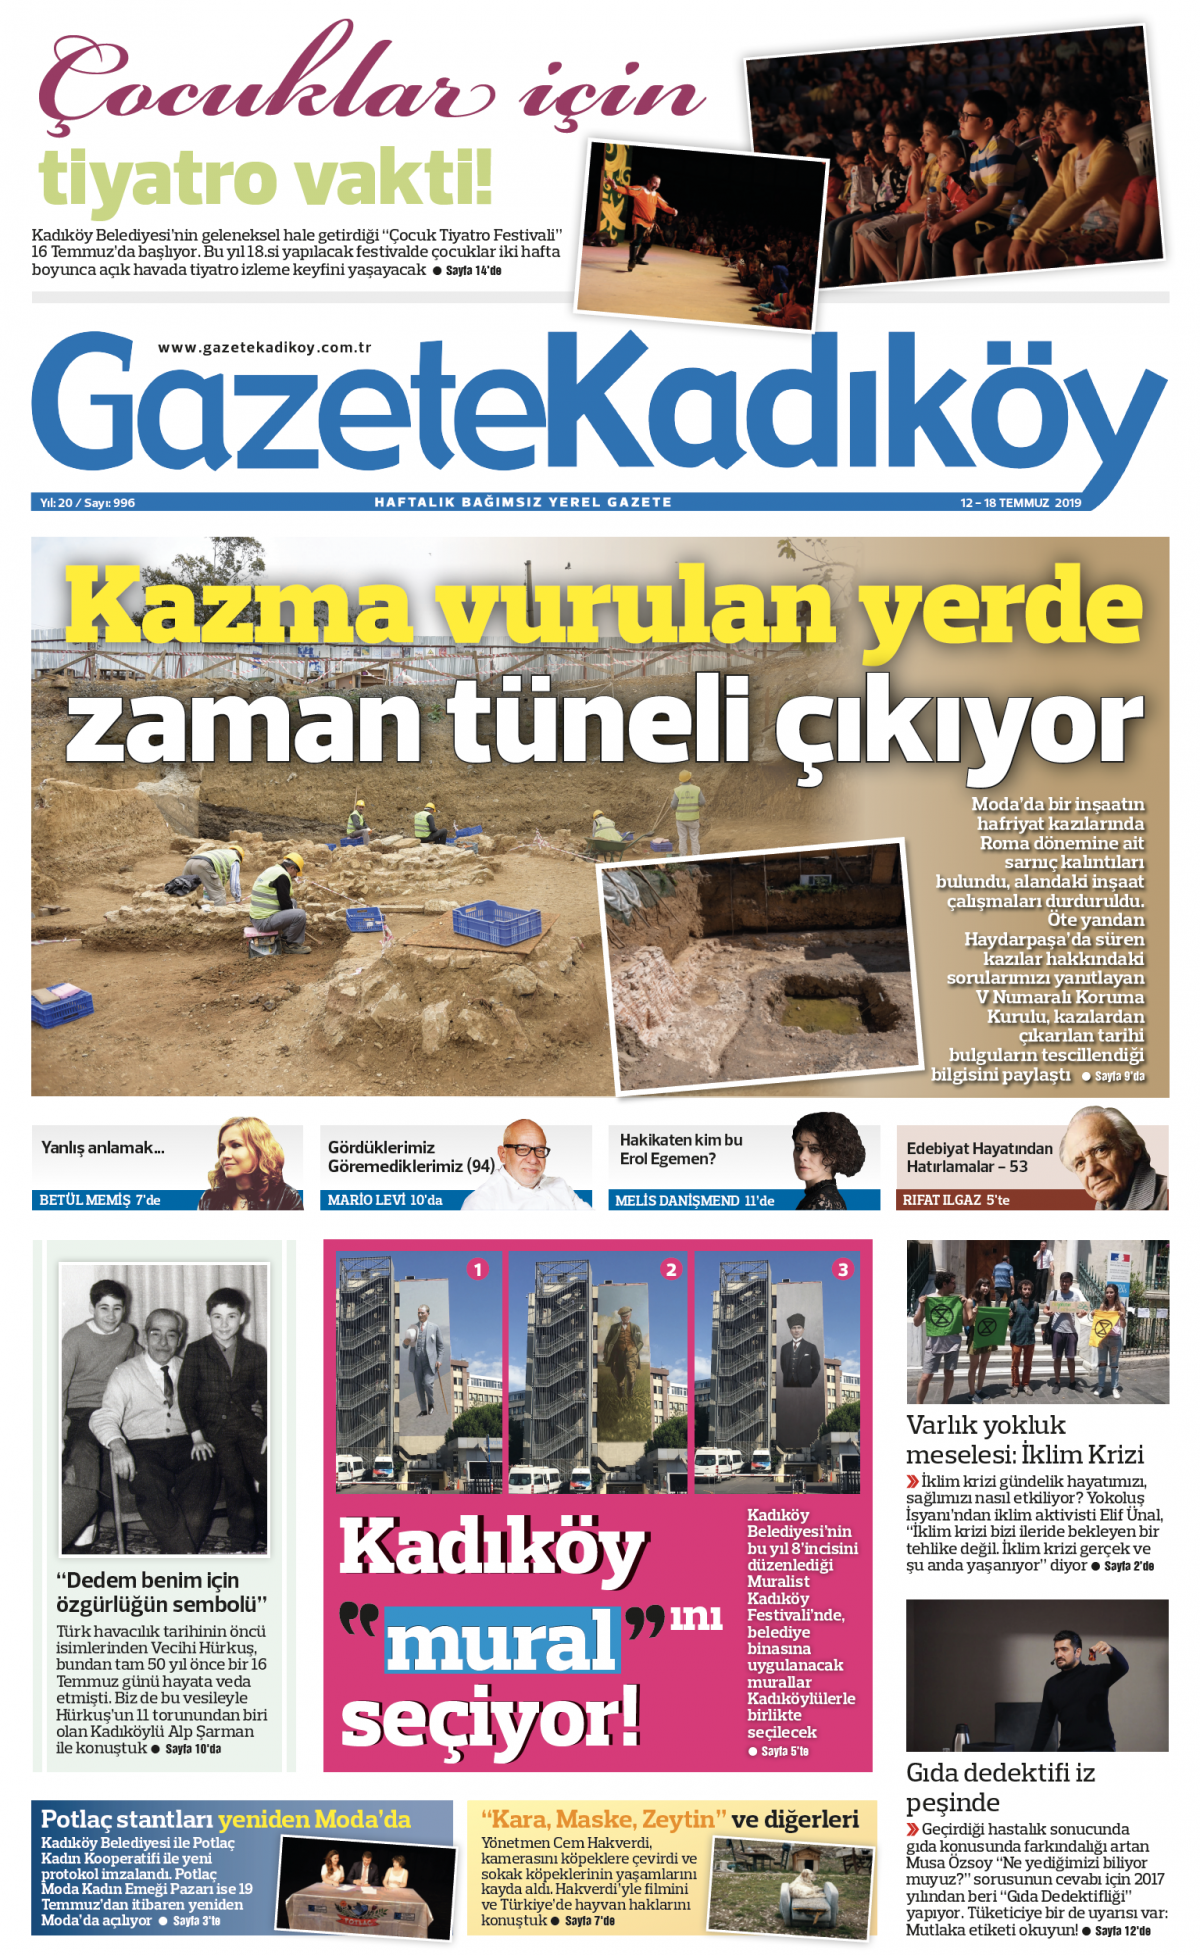 Gazete Kadıköy - 996. Sayı